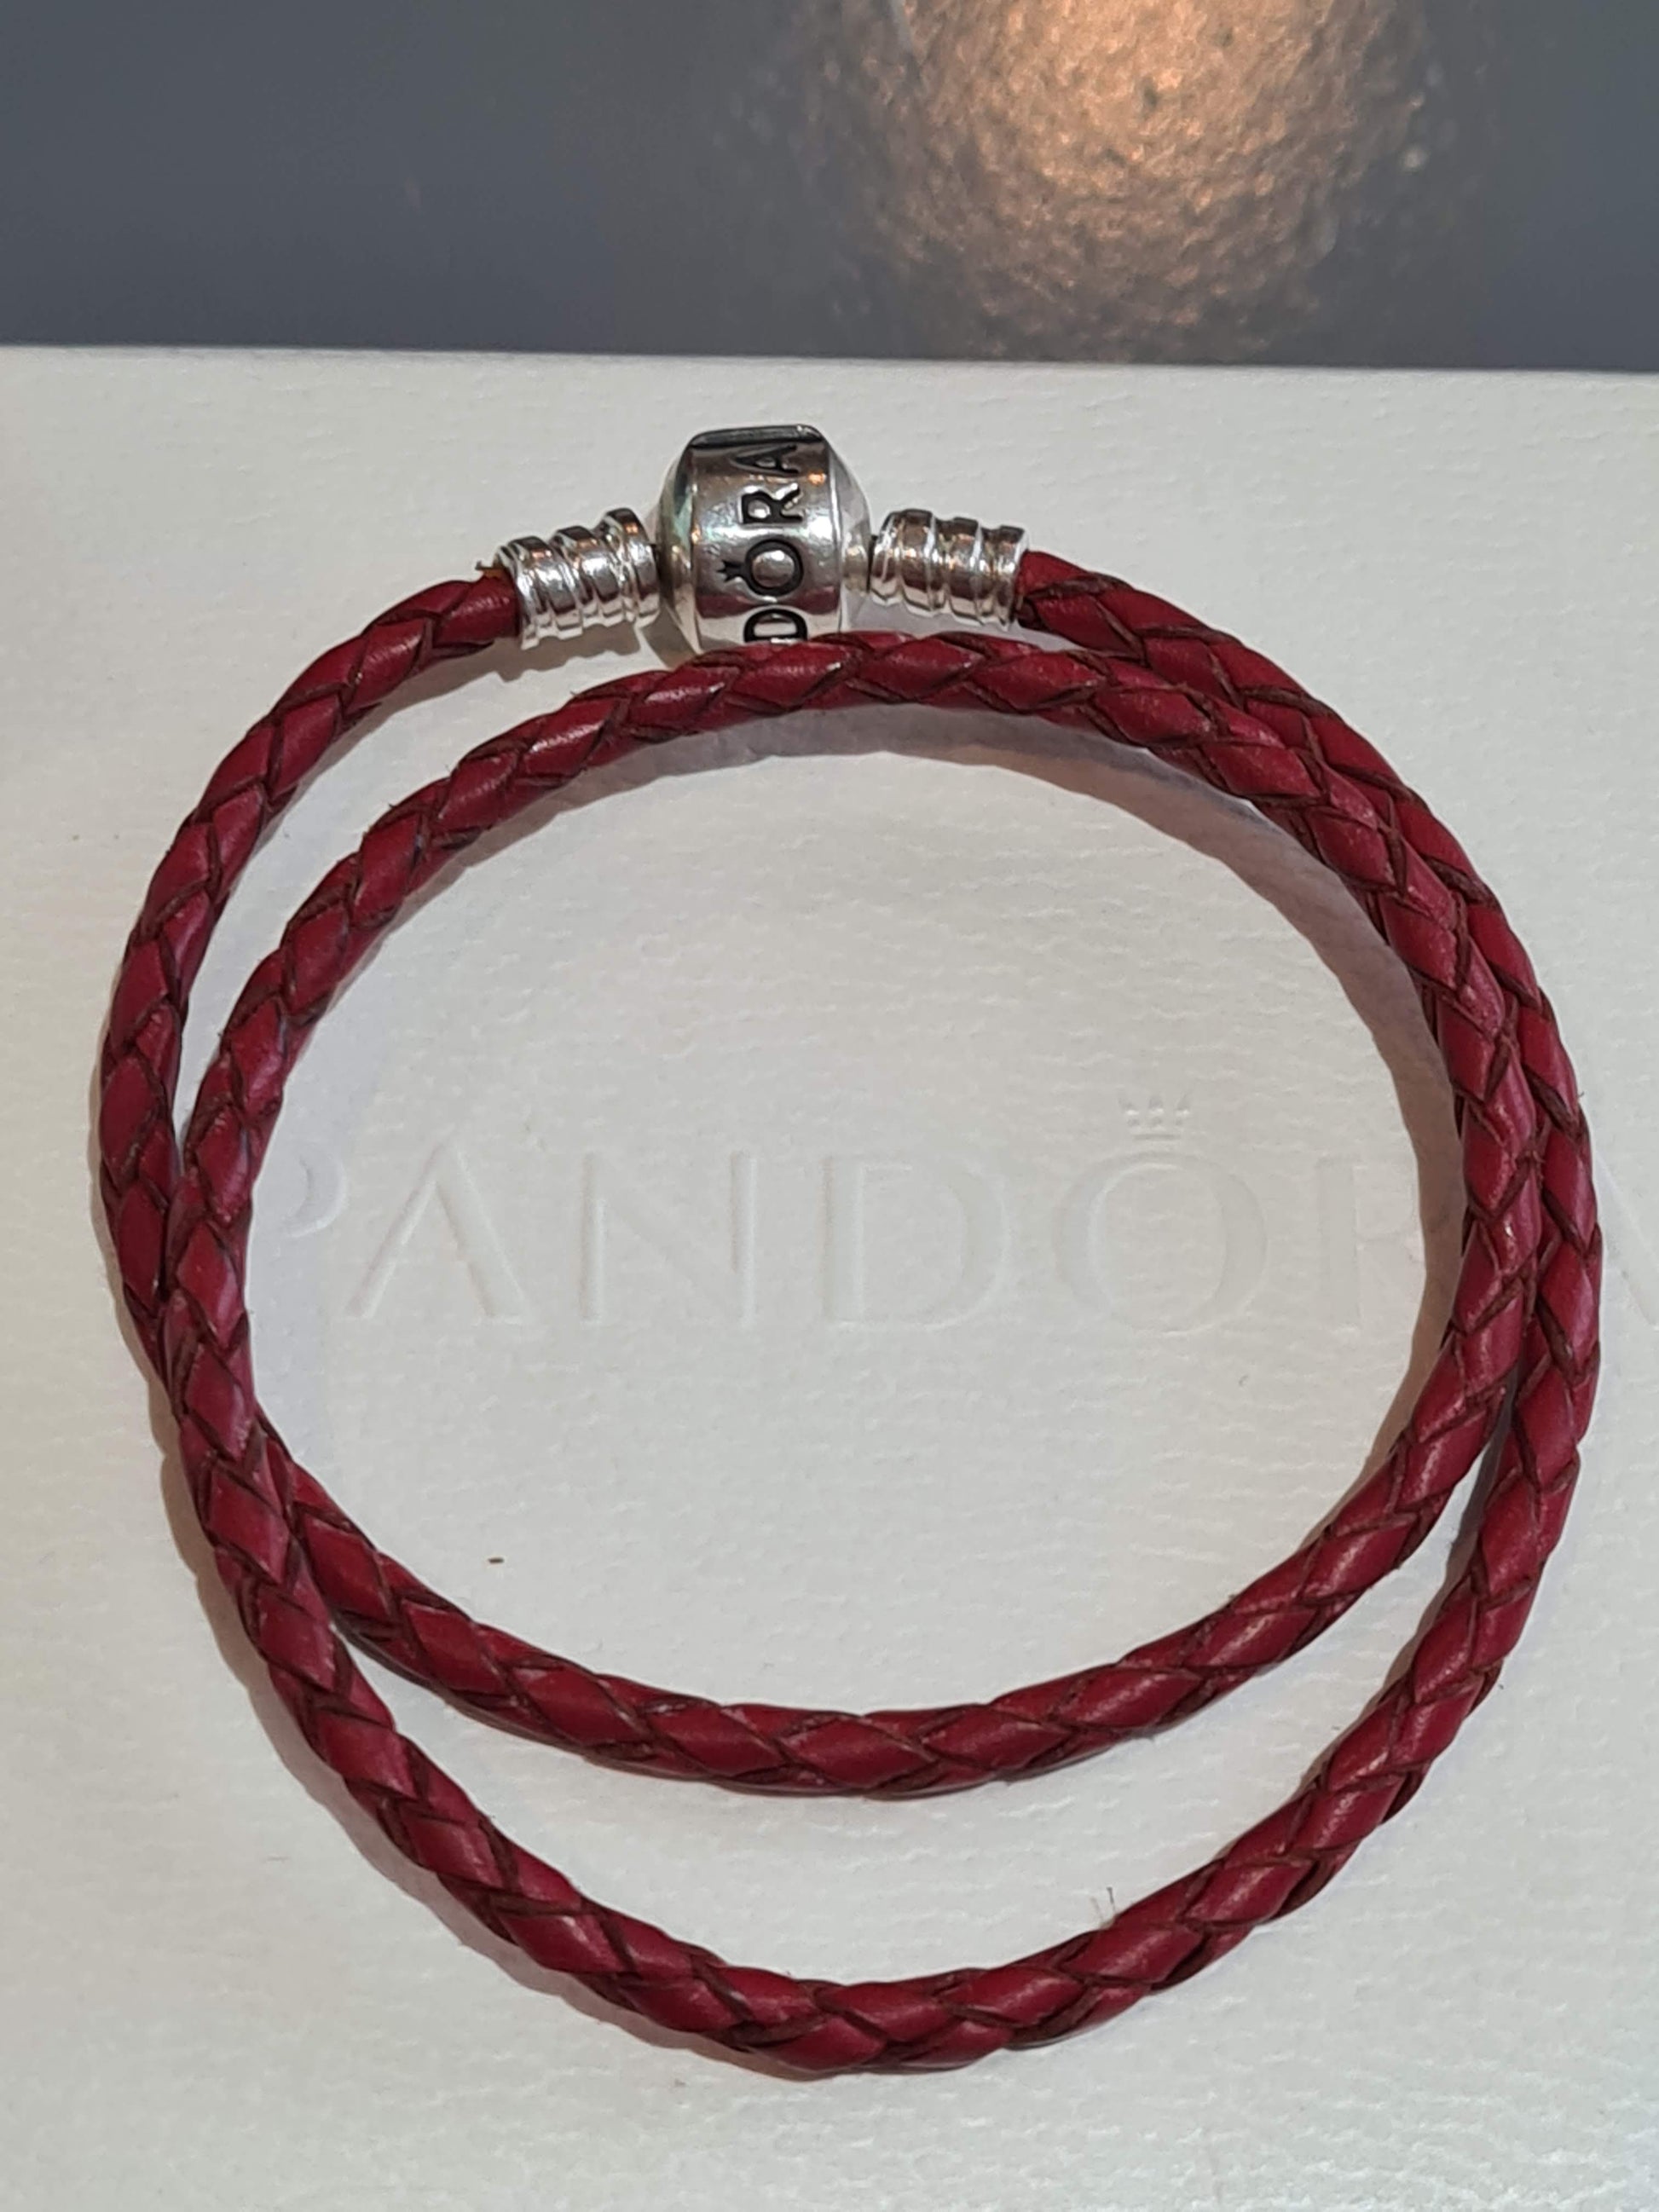 PANDORA Jewelry - Black Leather Charm Bracelet for India | Ubuy